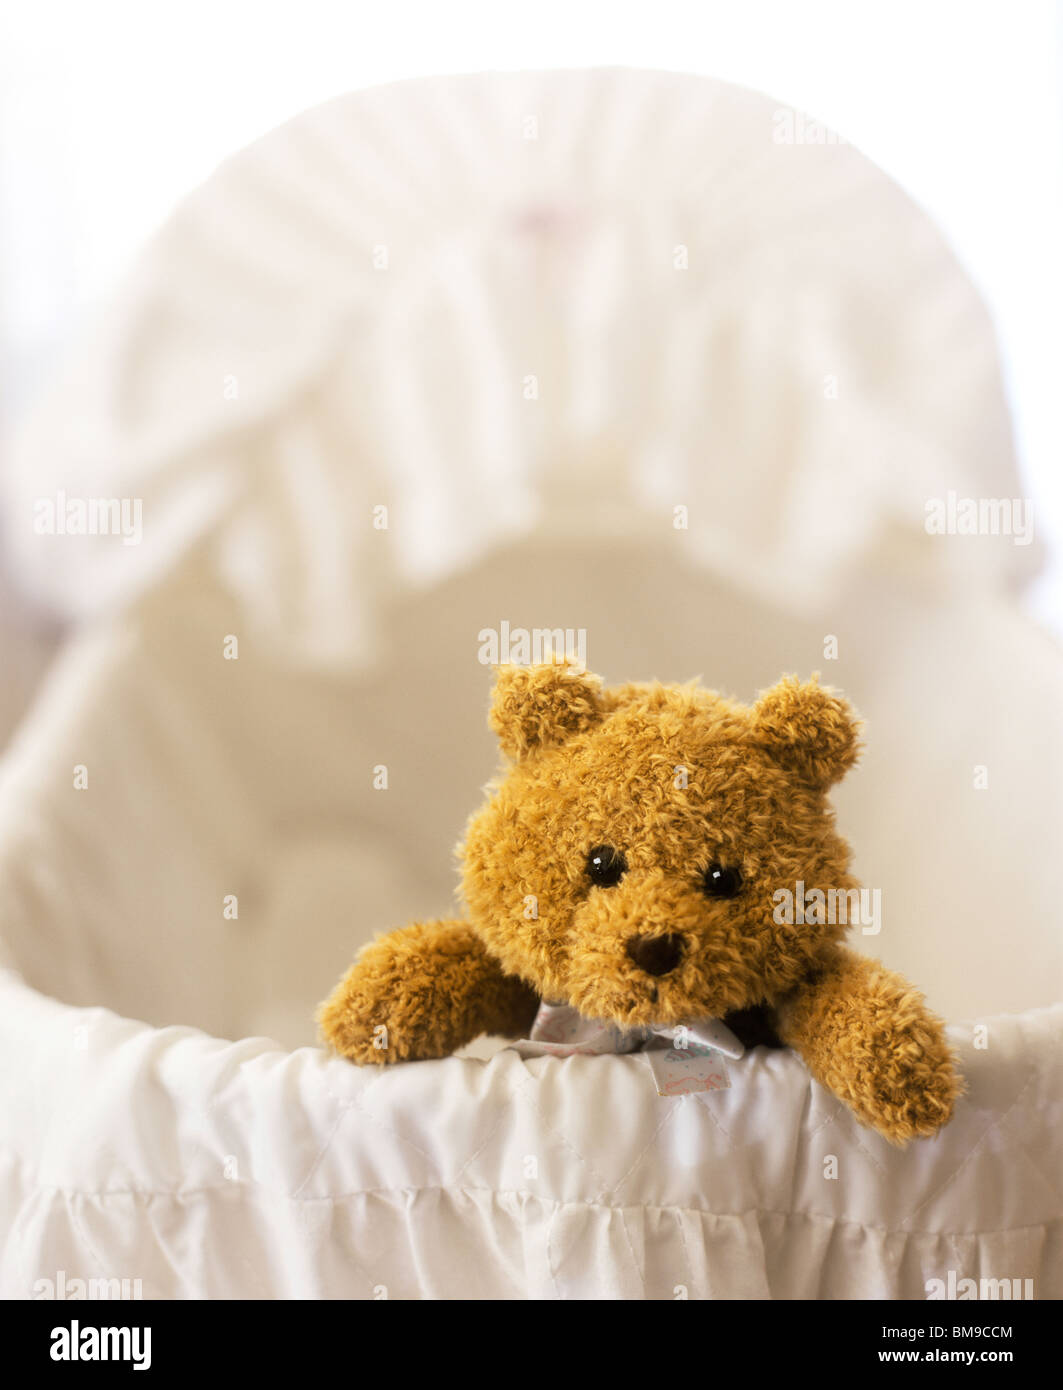 Foto de estudio de un osito de peluche en una cuna de bebé Fotografía de  stock - Alamy